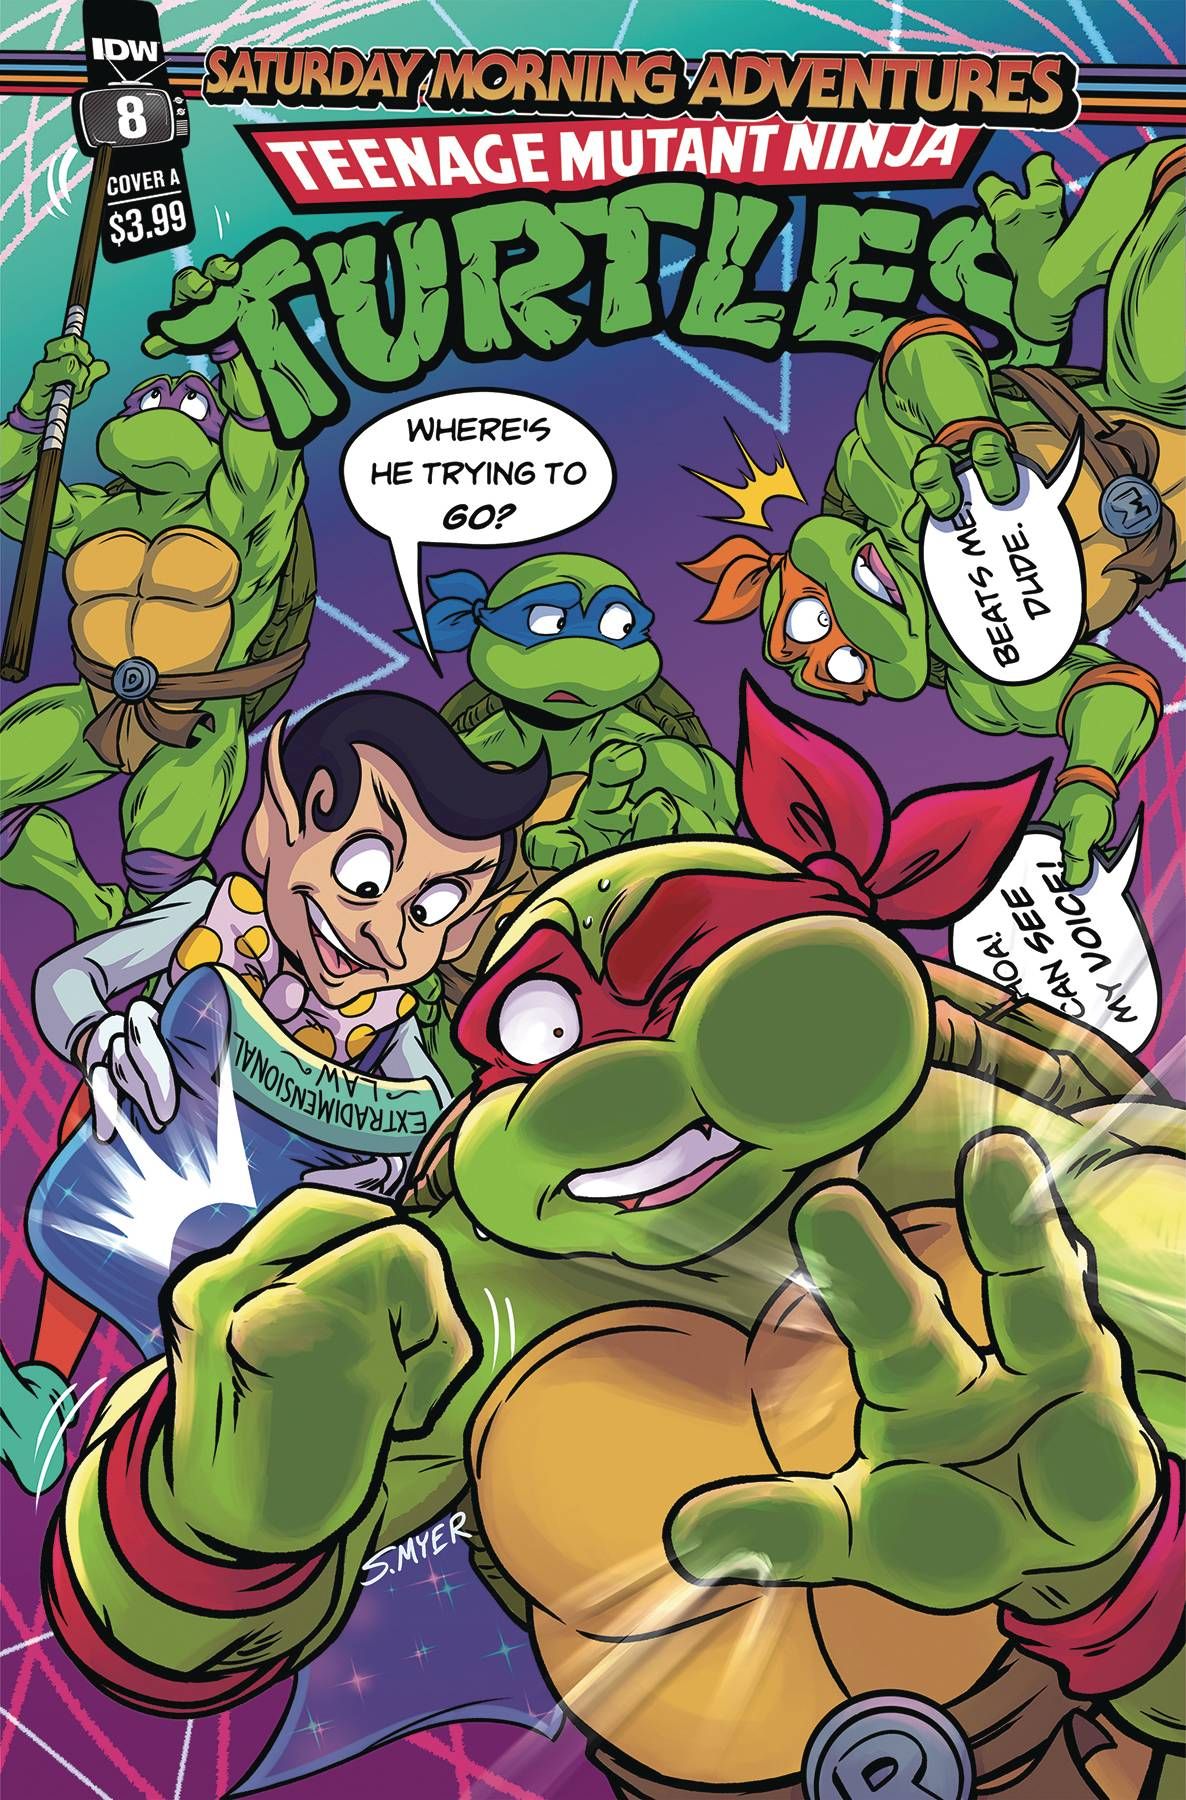 Teenage Mutant Ninja Turtles: Saturday Morning Adventures #8 Comic